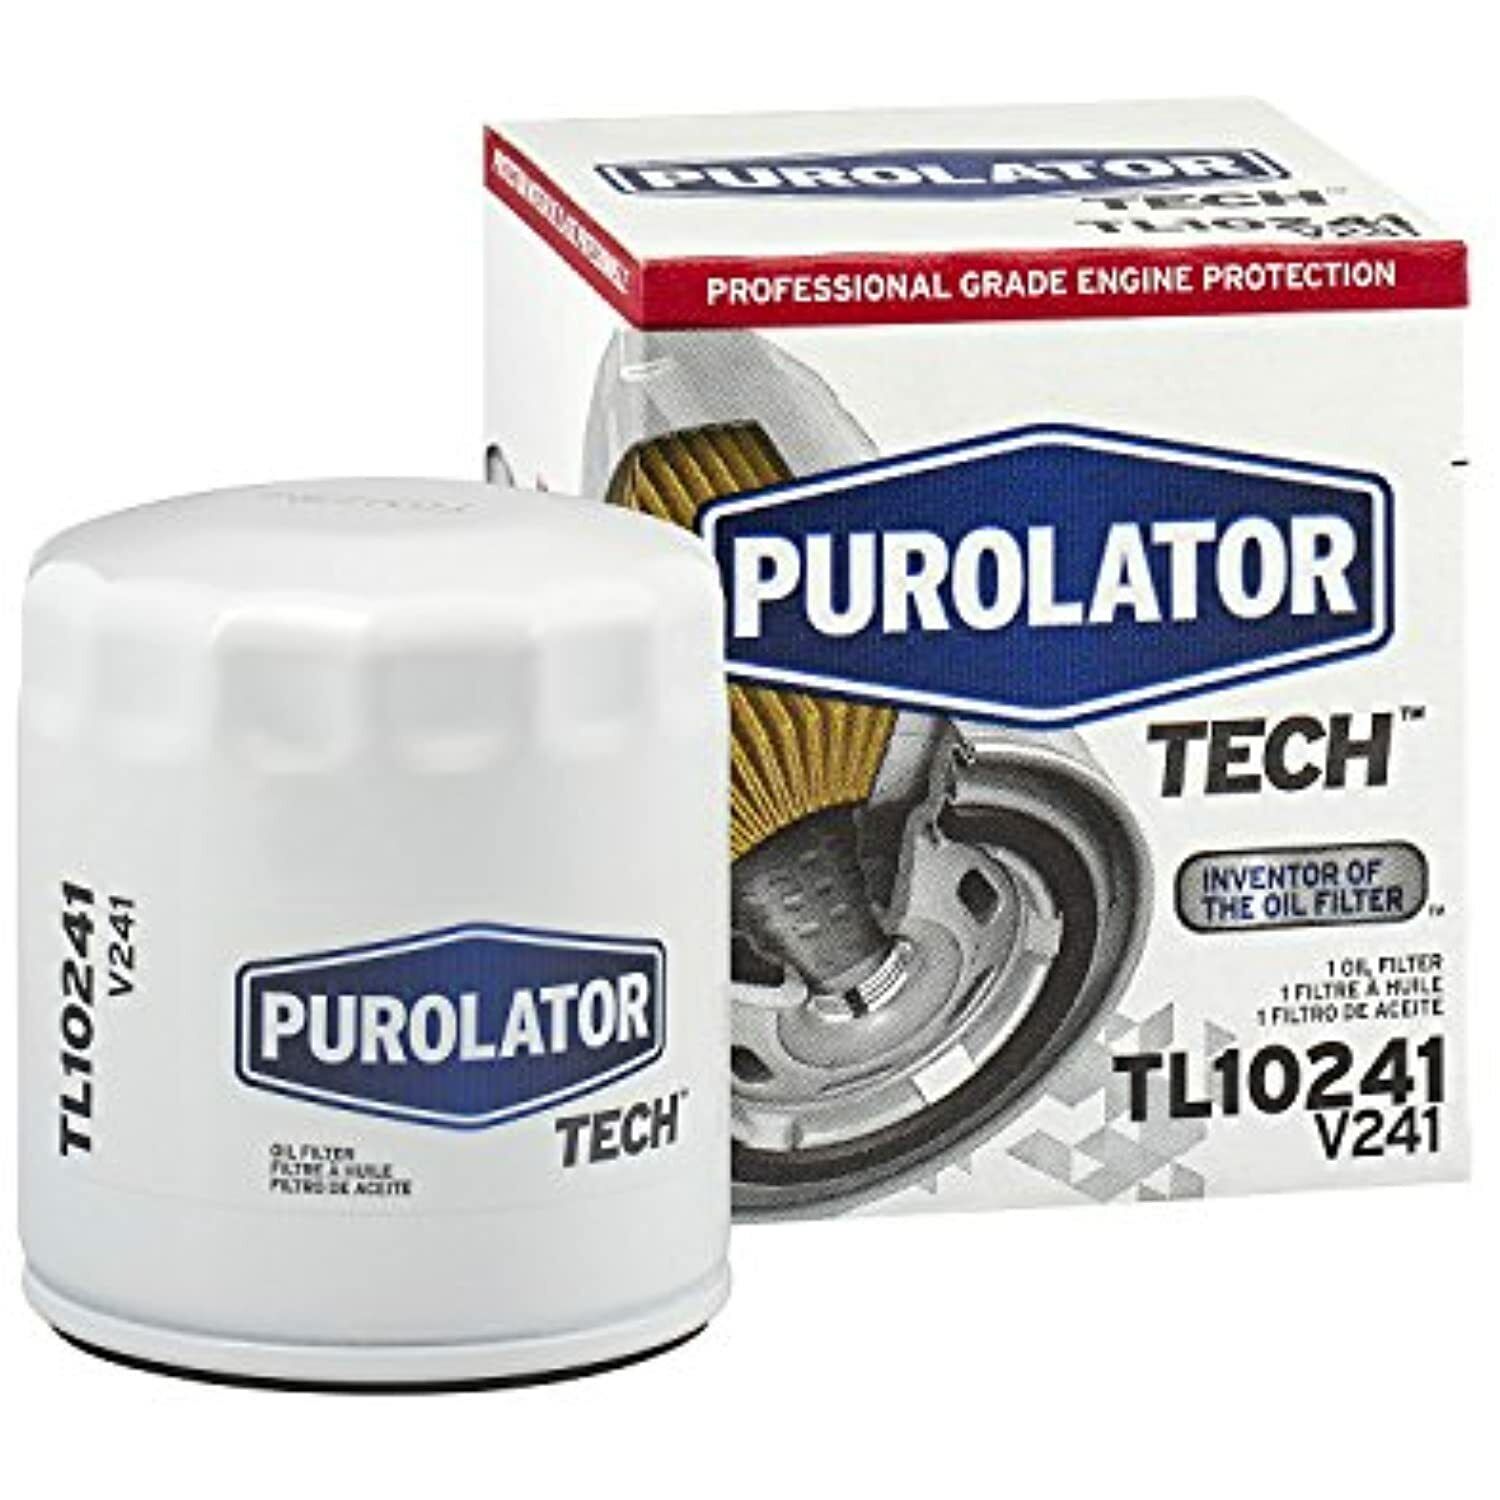 PurolatorTECH Spin On Oil Filter TL10241